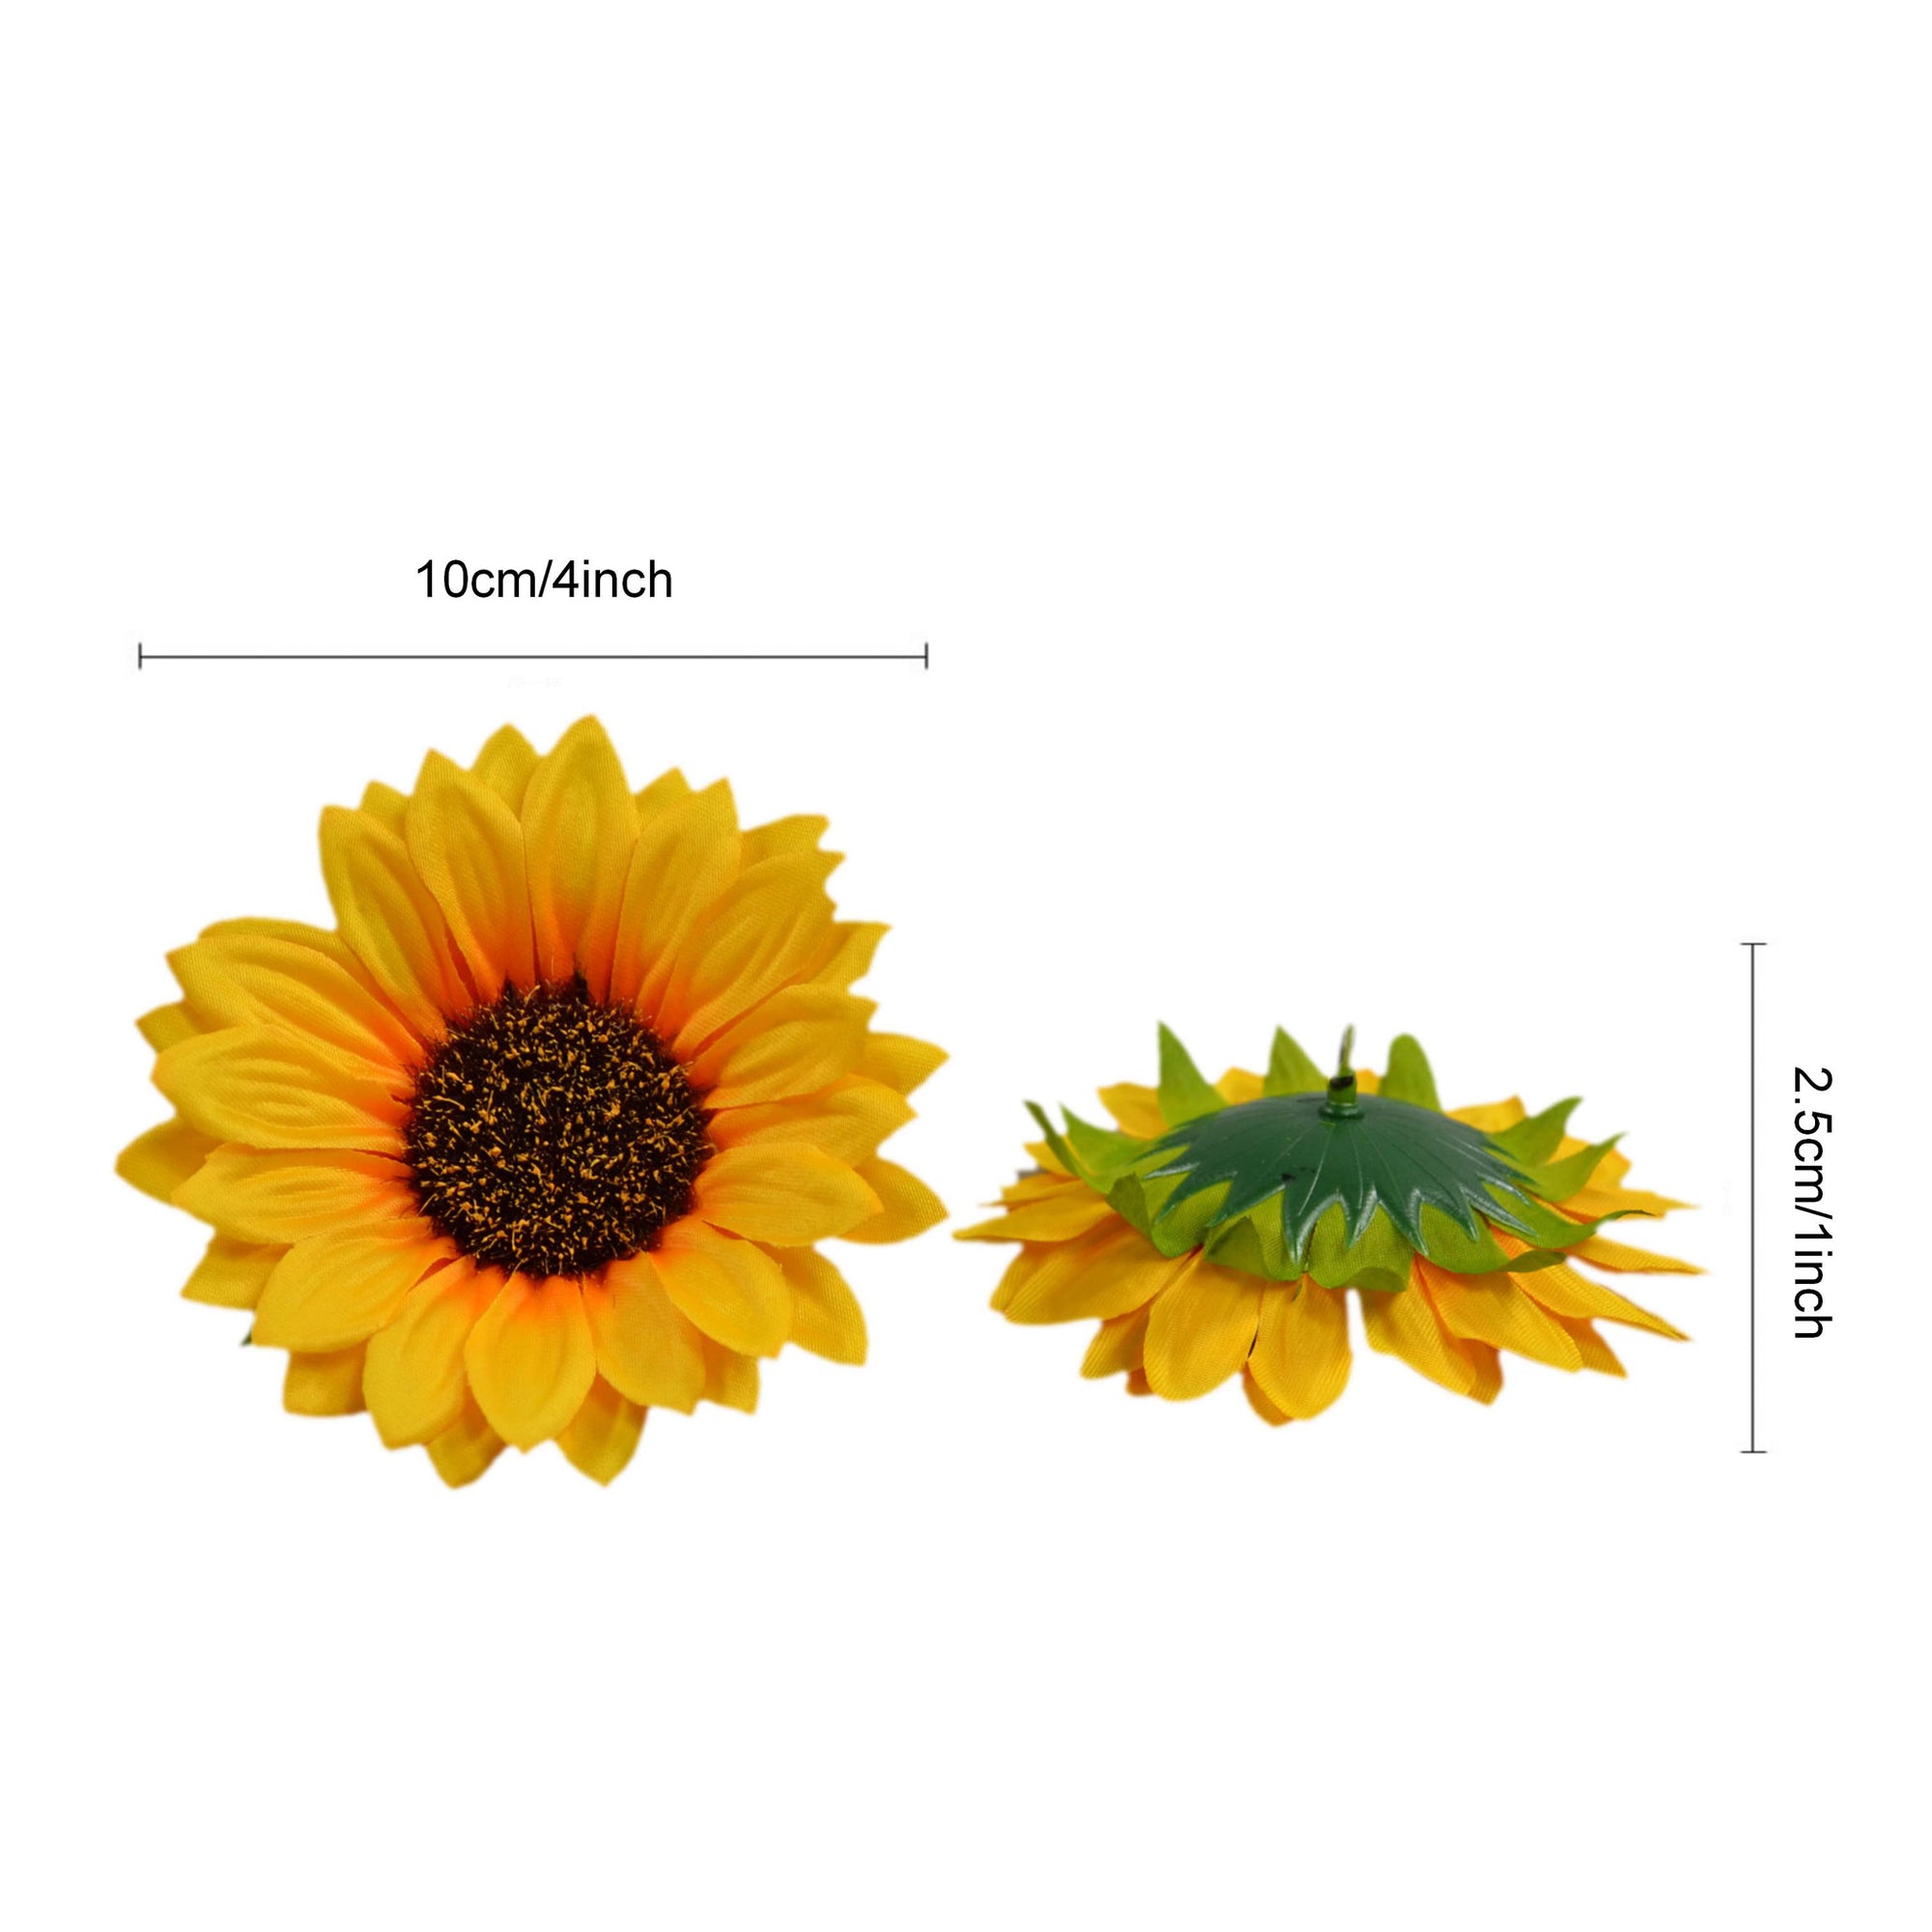 Bulk Silk Sunflowers Artificial Flowers 4"